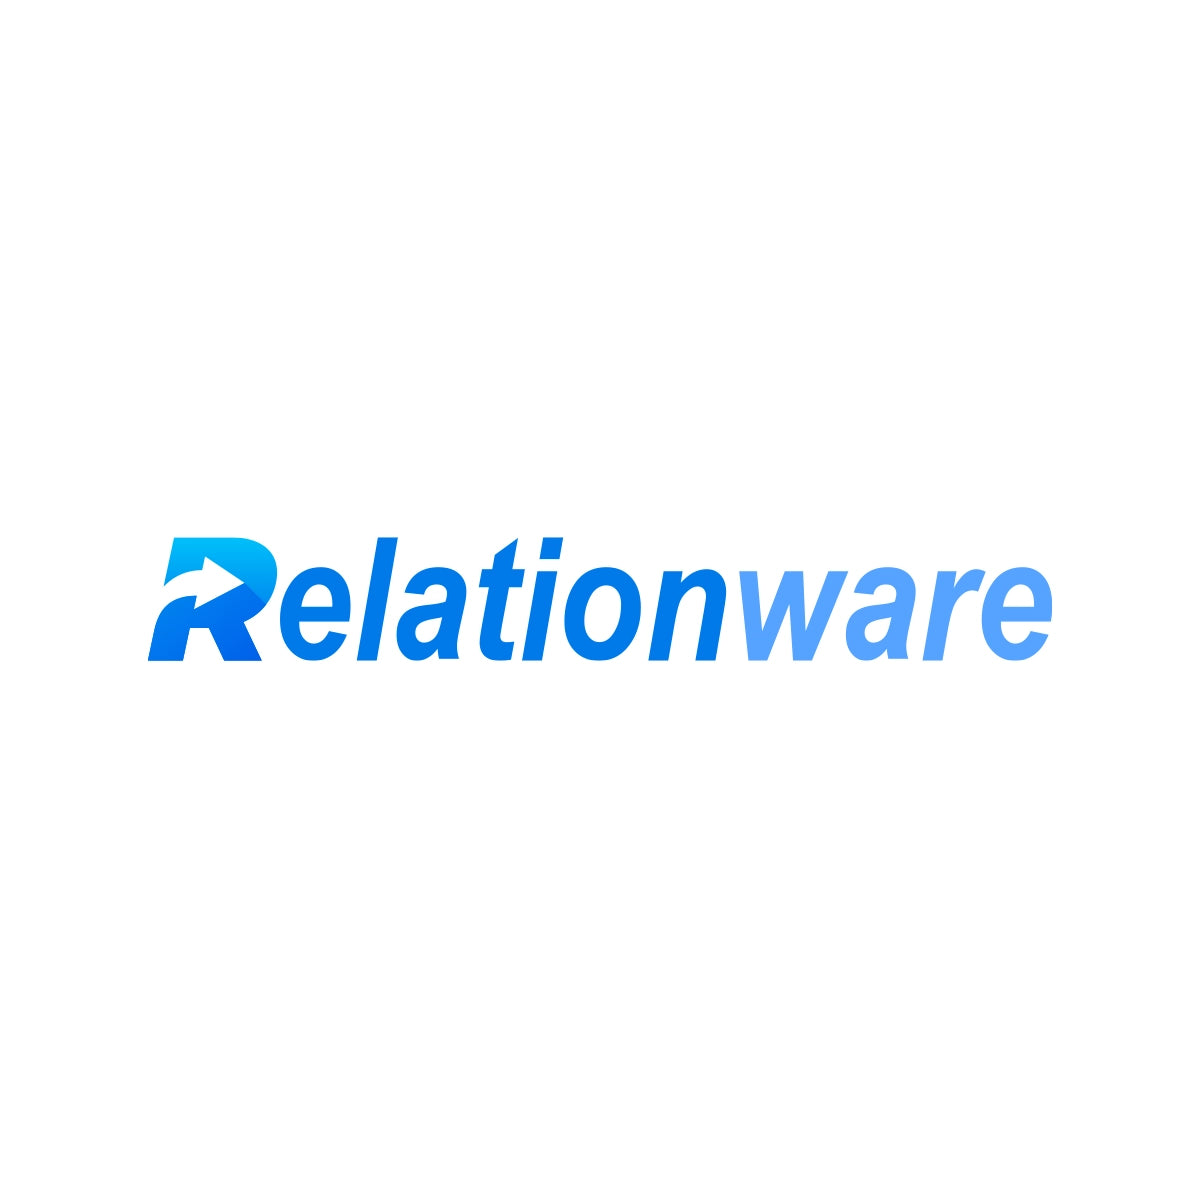 relationware.com